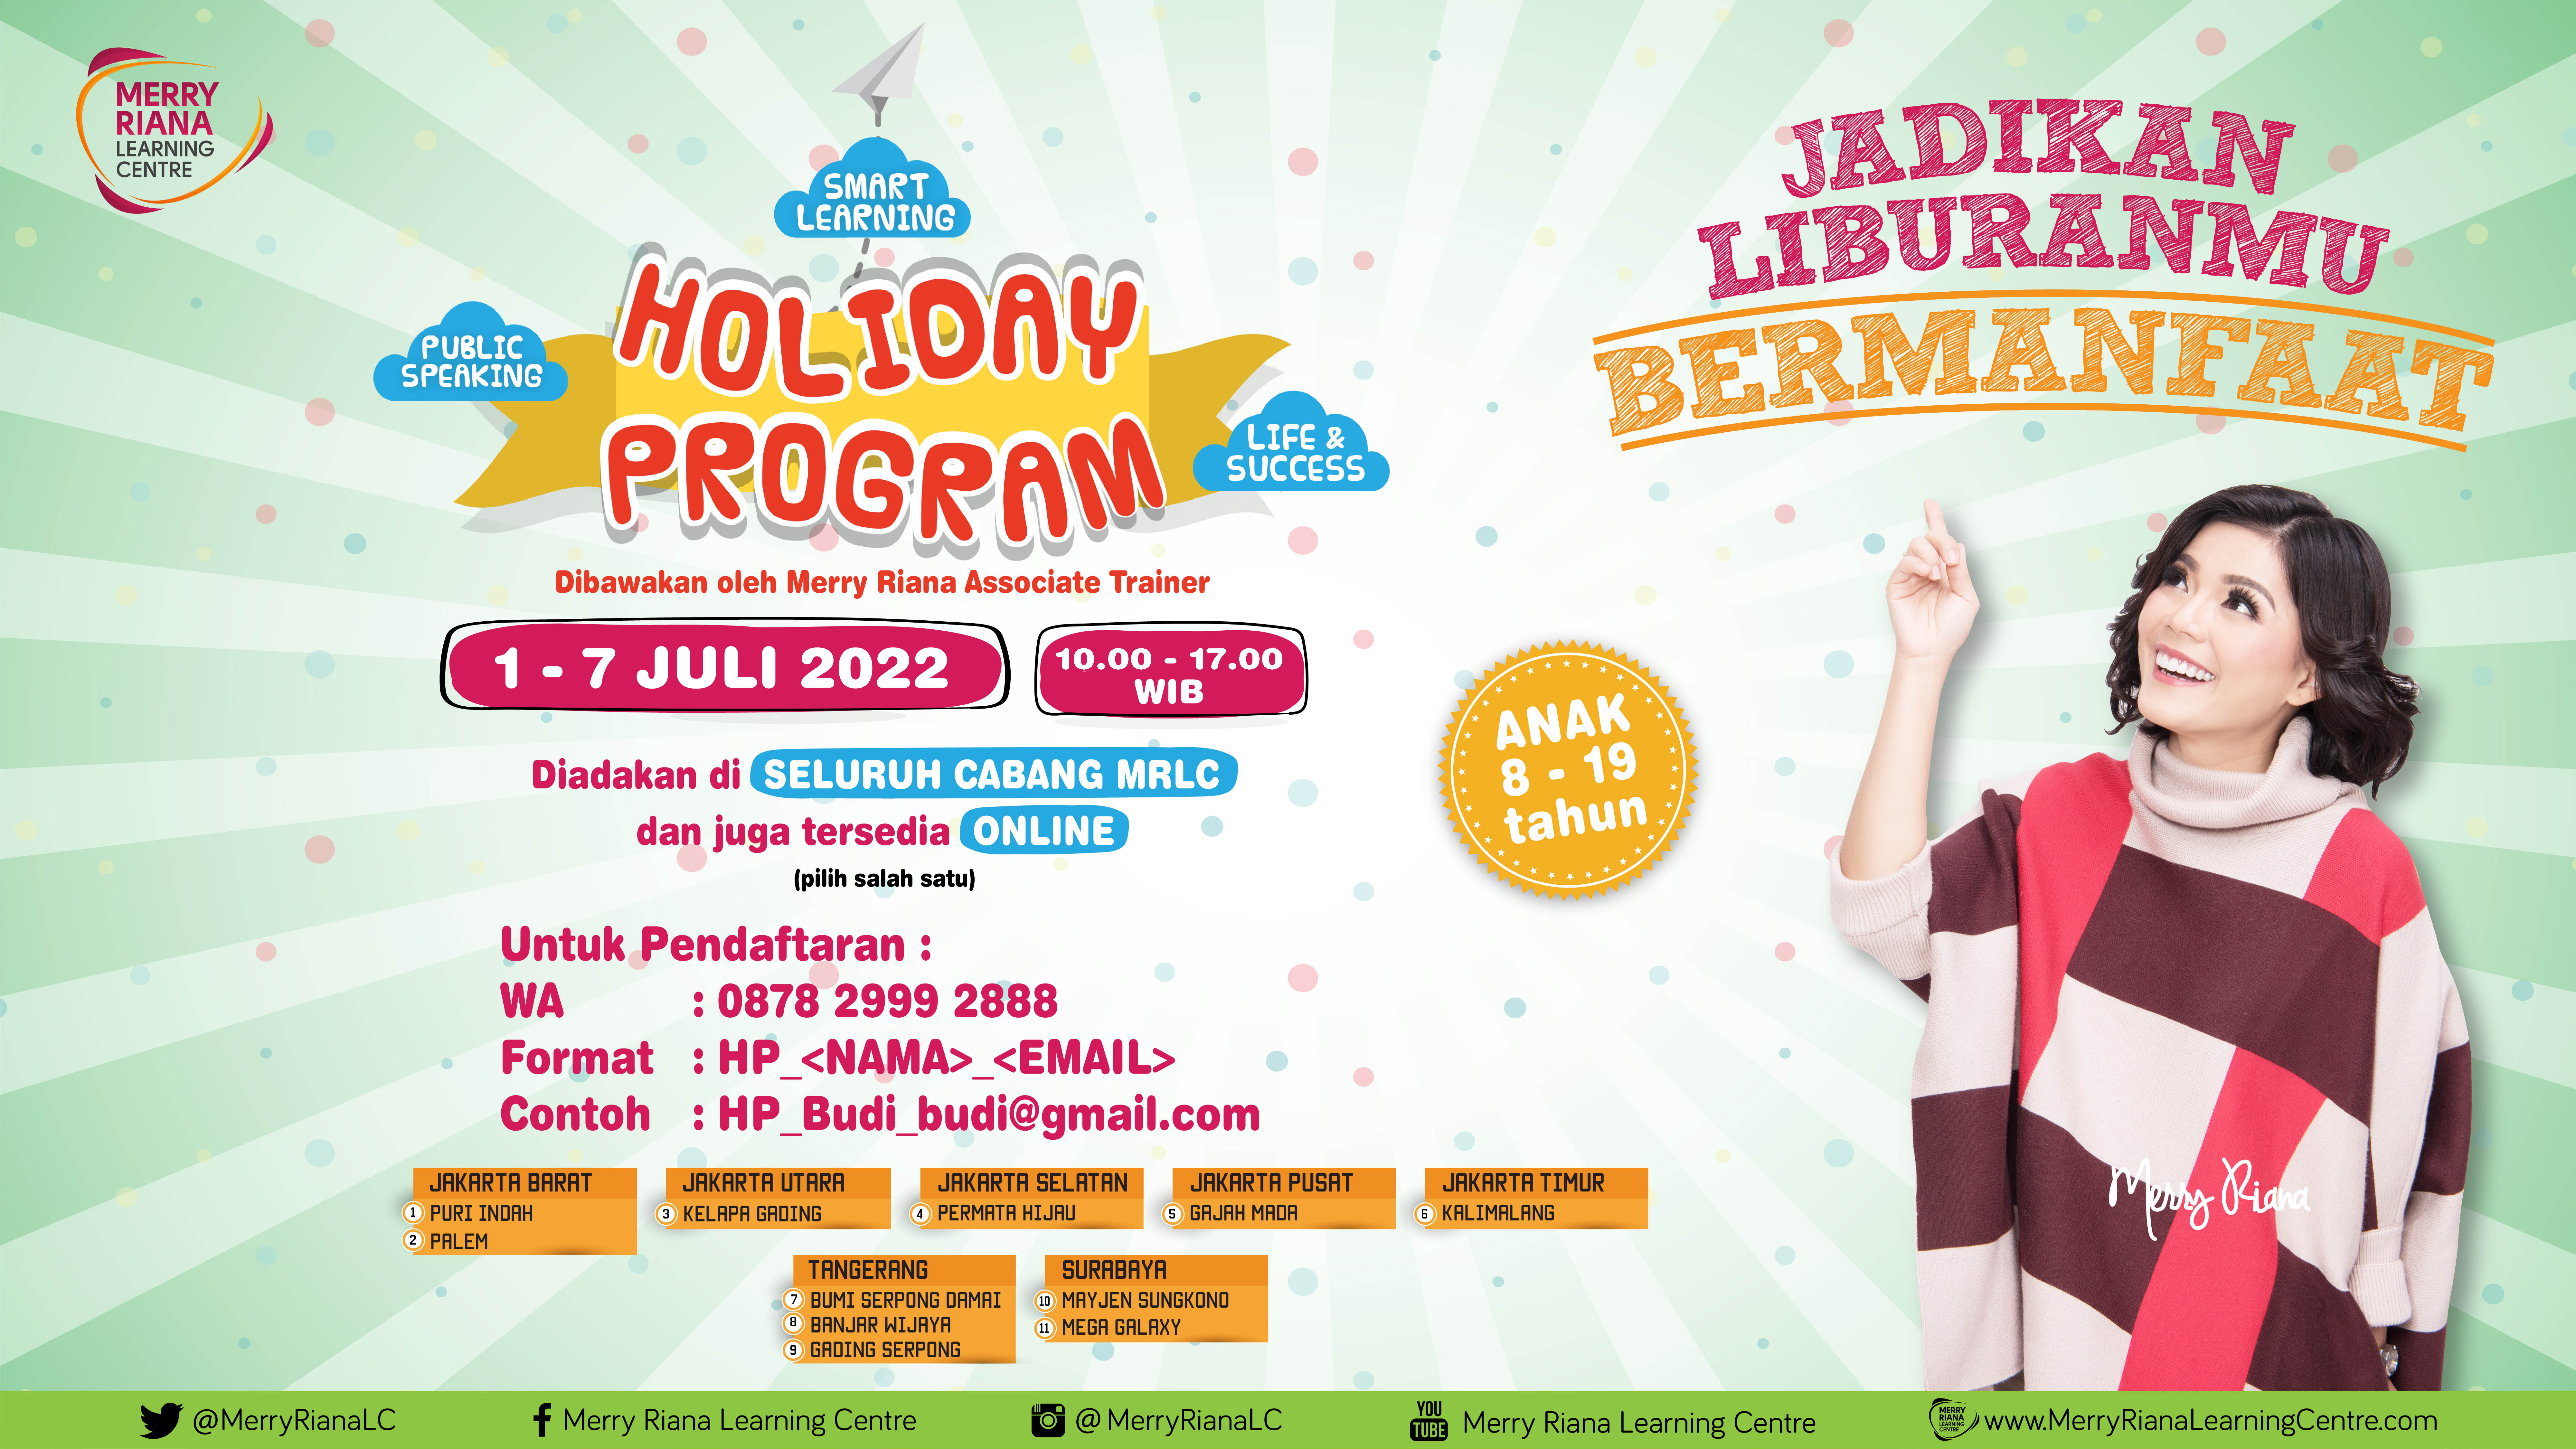 Holiday Program by Merry Riana Learning Centre (MRLC) merupakan PROGRAM UNGGULAN saat liburan sekolah yang telah diikuti lebih dari 1.000 anak dan remaja di seluruh Indonesia.